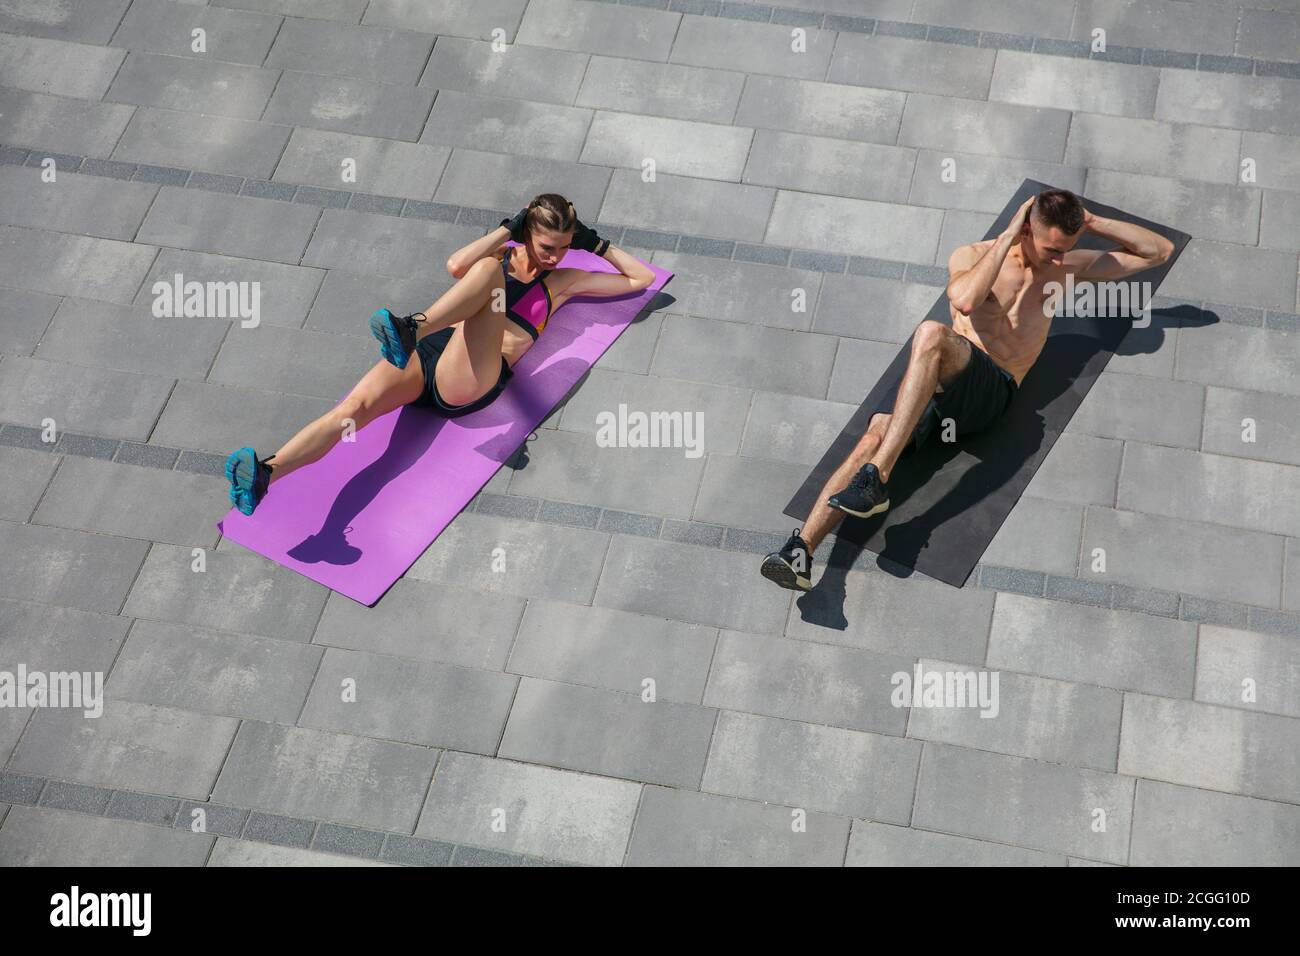 Junges Paar in Sport-Outfit tun Morgen-Workout im Freien. Mann und Frau tun Cardio-und Kraftübungen, üben Aktivität für den unteren und oberen Körper. Sport, gesundes Lifestyle-Konzept. Stockfoto